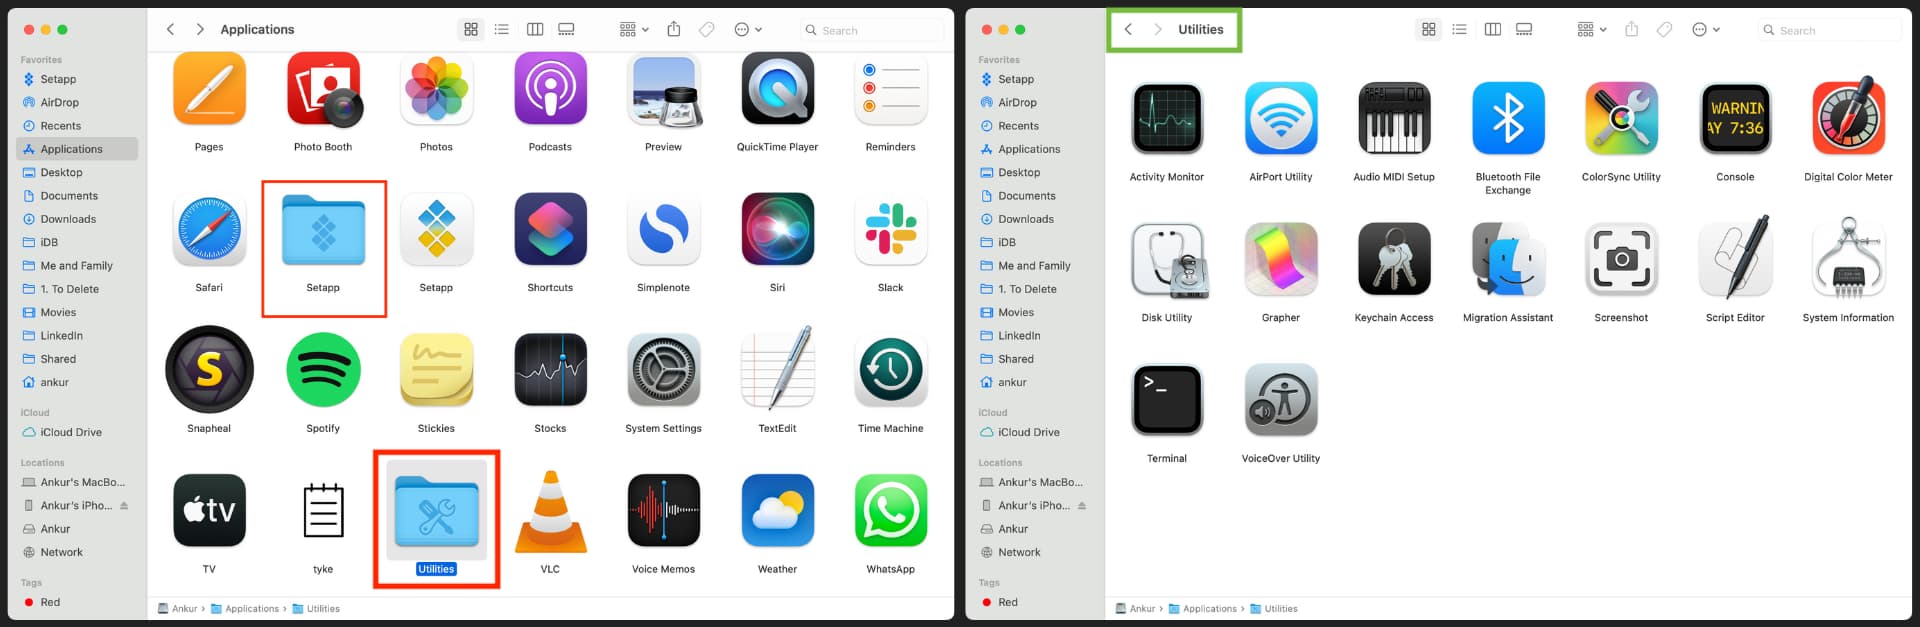 Utilities app folder on Mac showing the apps inside it